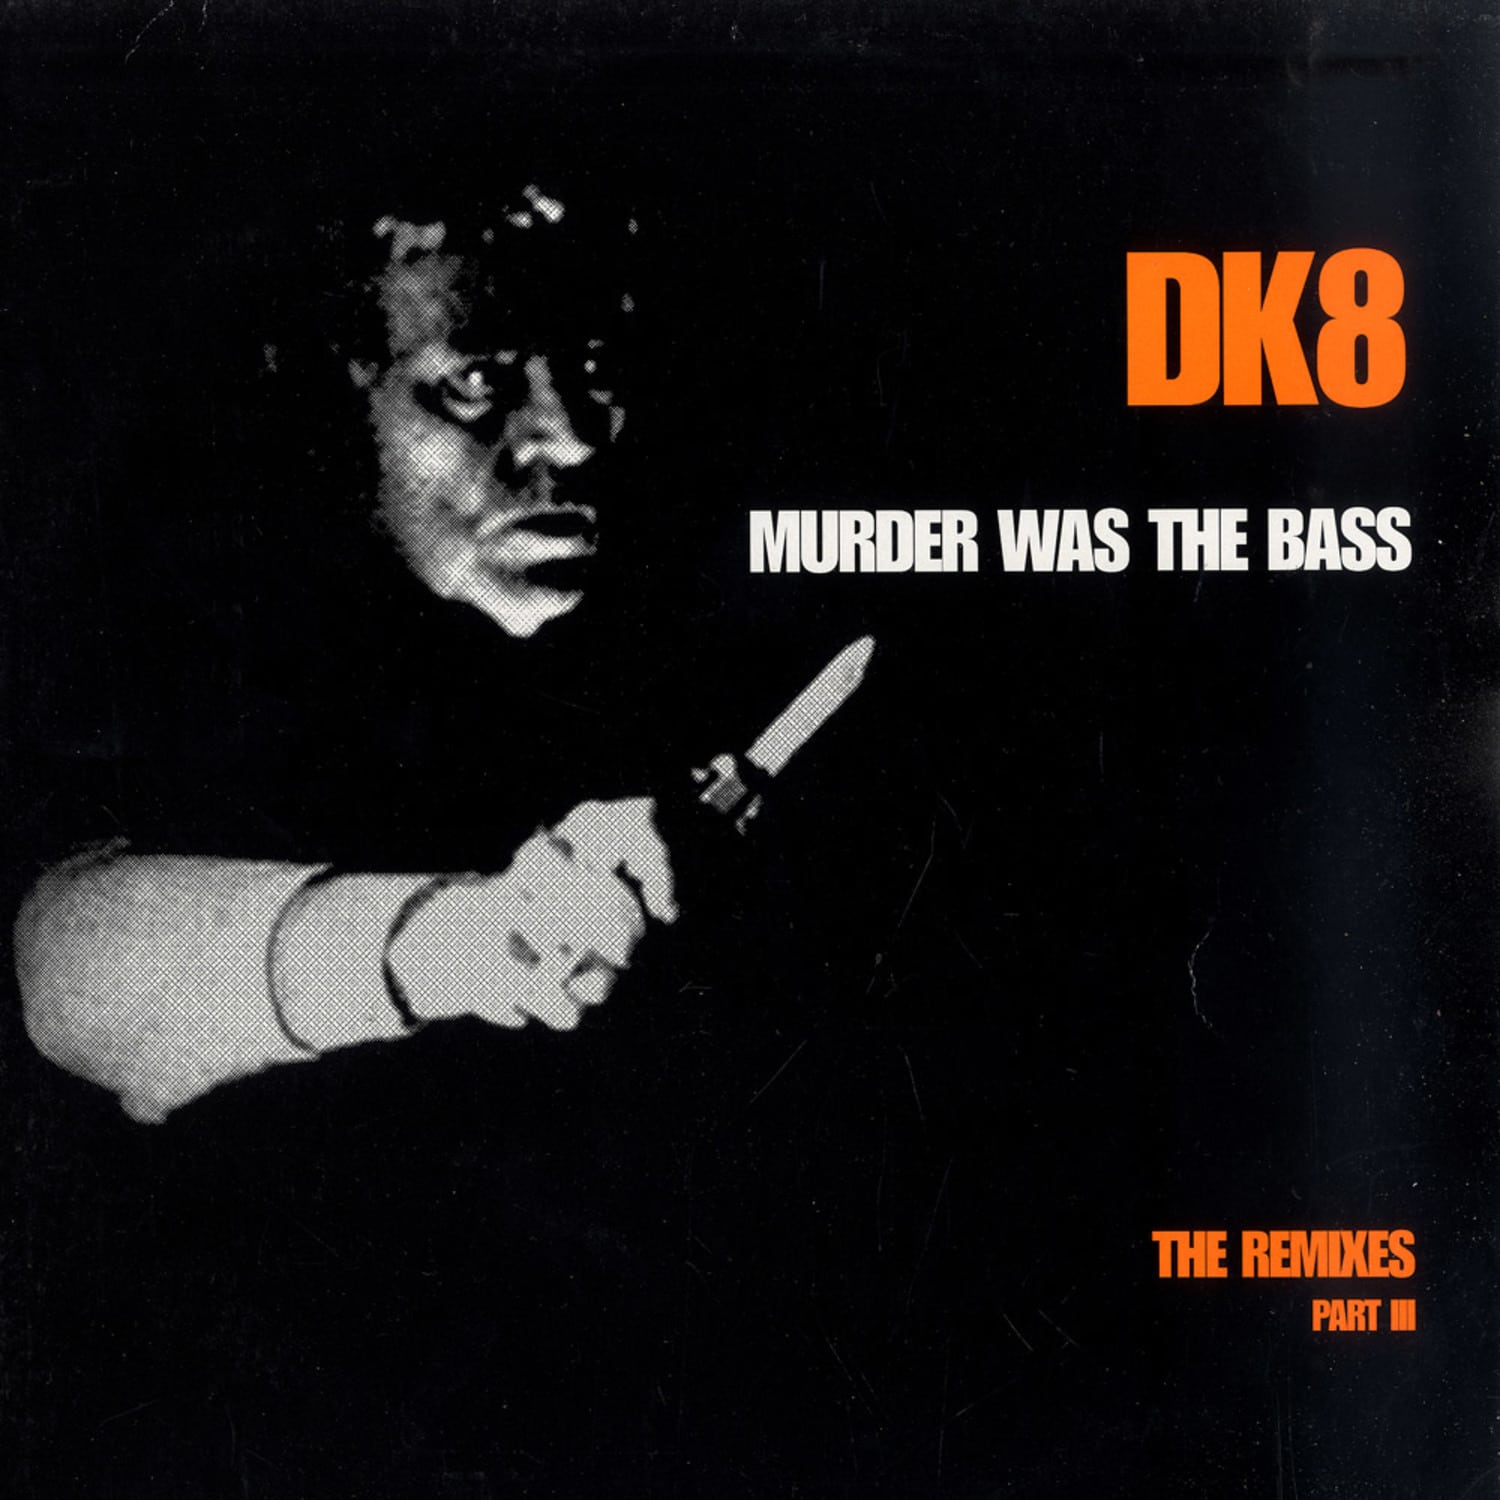 DK8 - MURDER WAS THE BASS - THE REMIXES PART 3